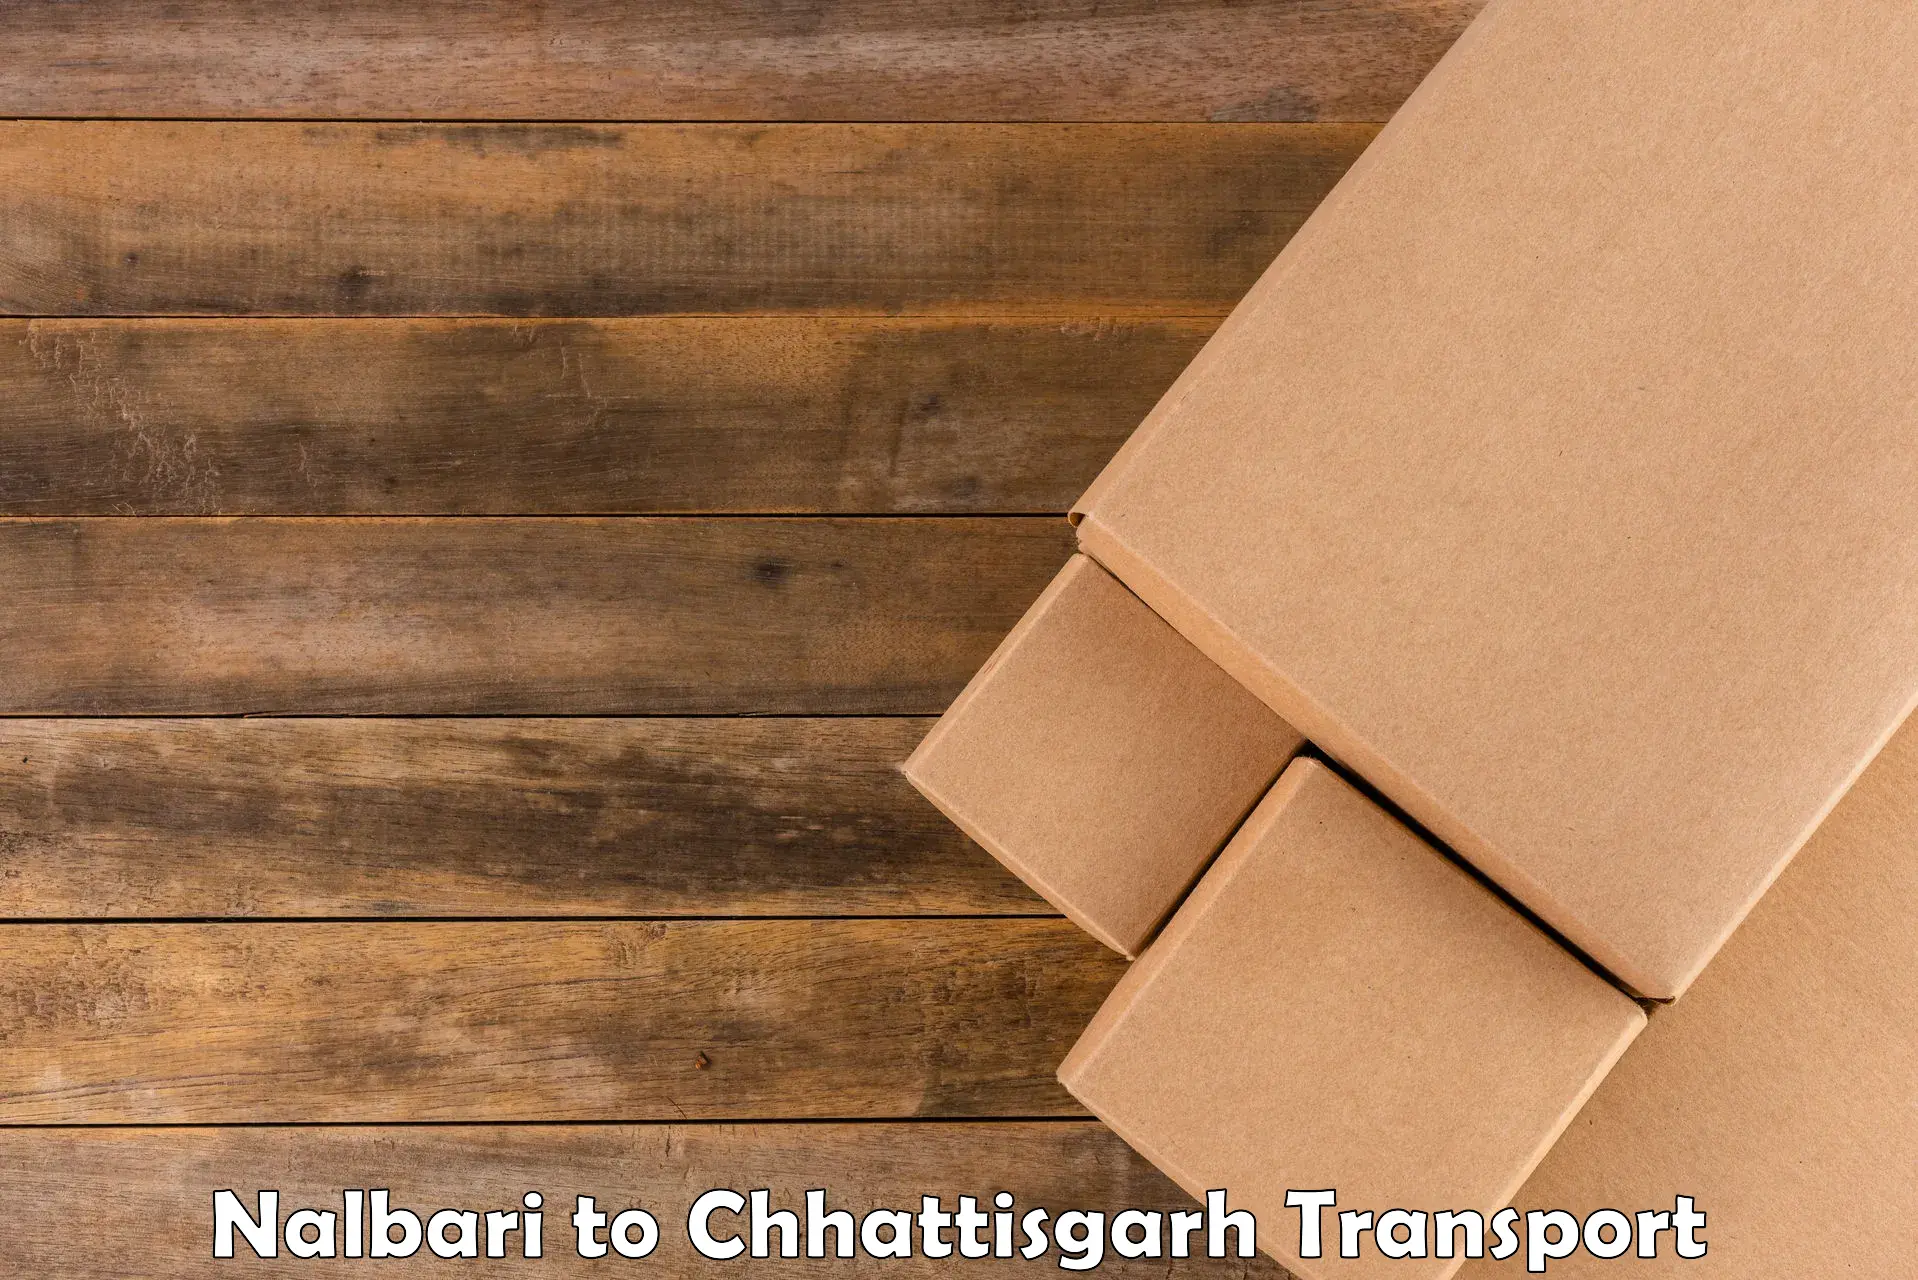 Truck transport companies in India Nalbari to Bhanupratappur